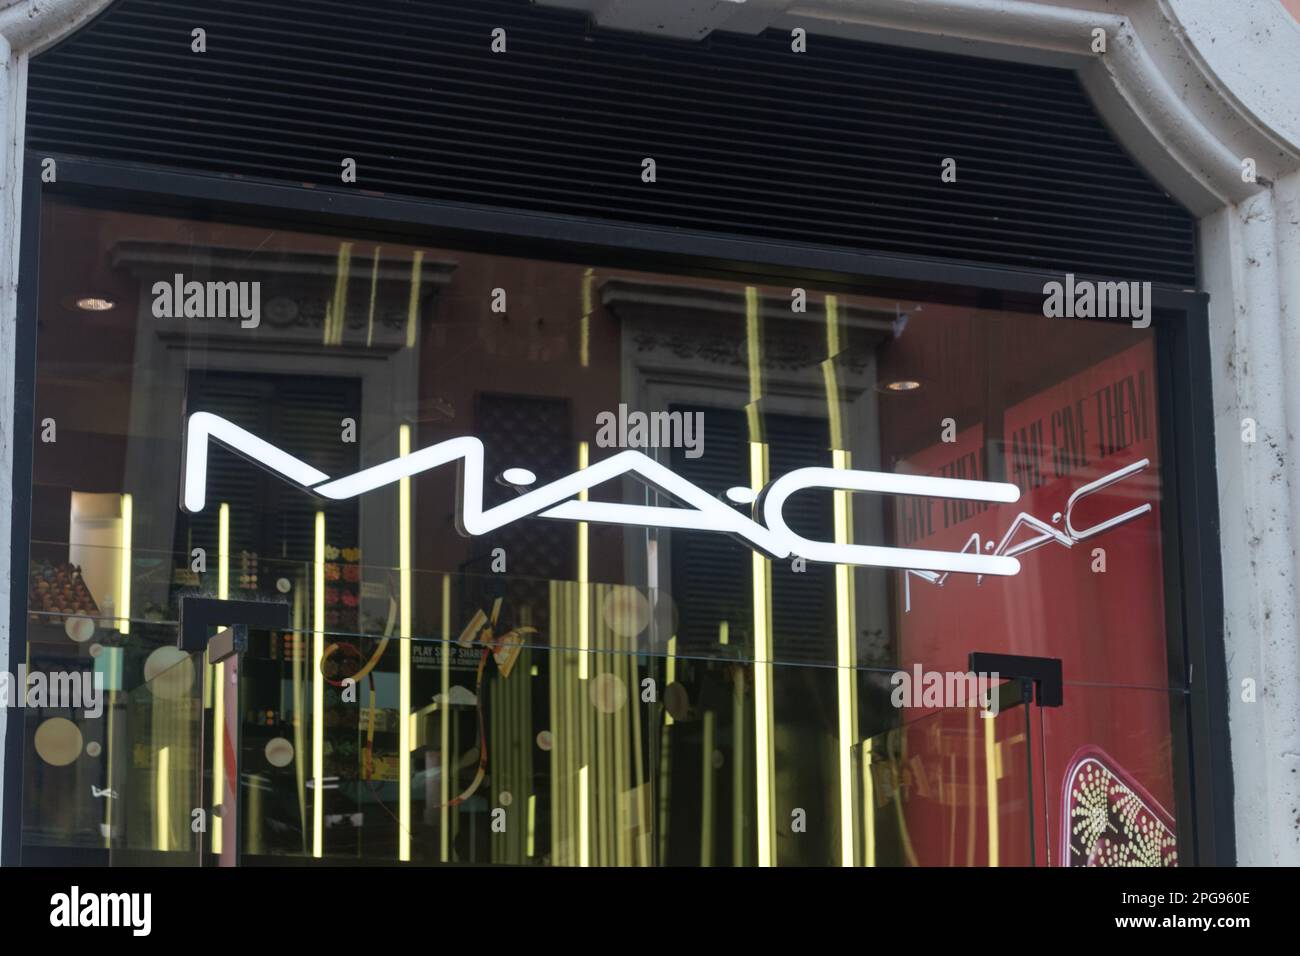 Macom - Mallucci London Shop